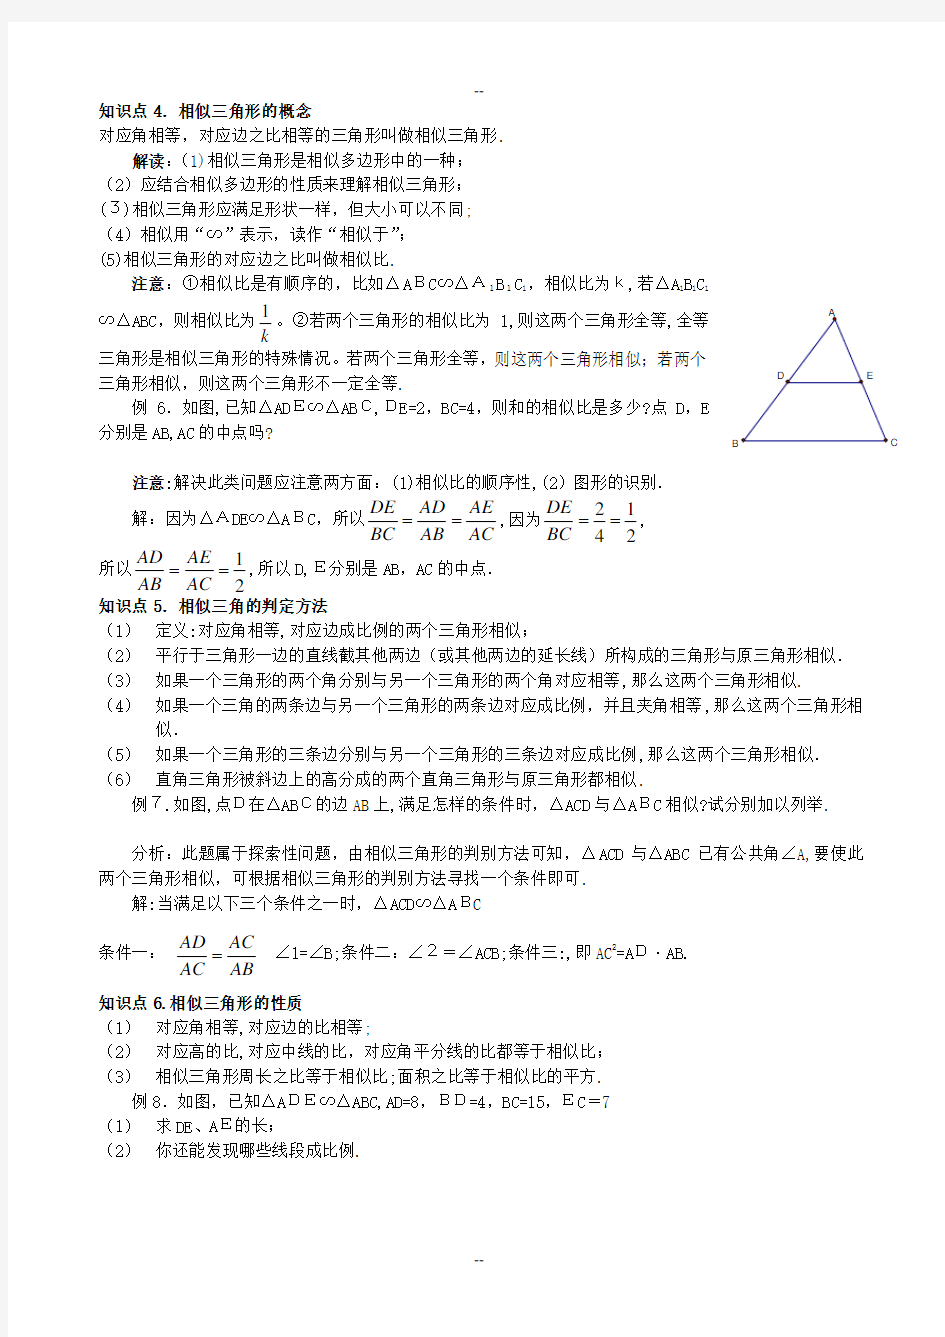 相似三角形模型分析大全(精)